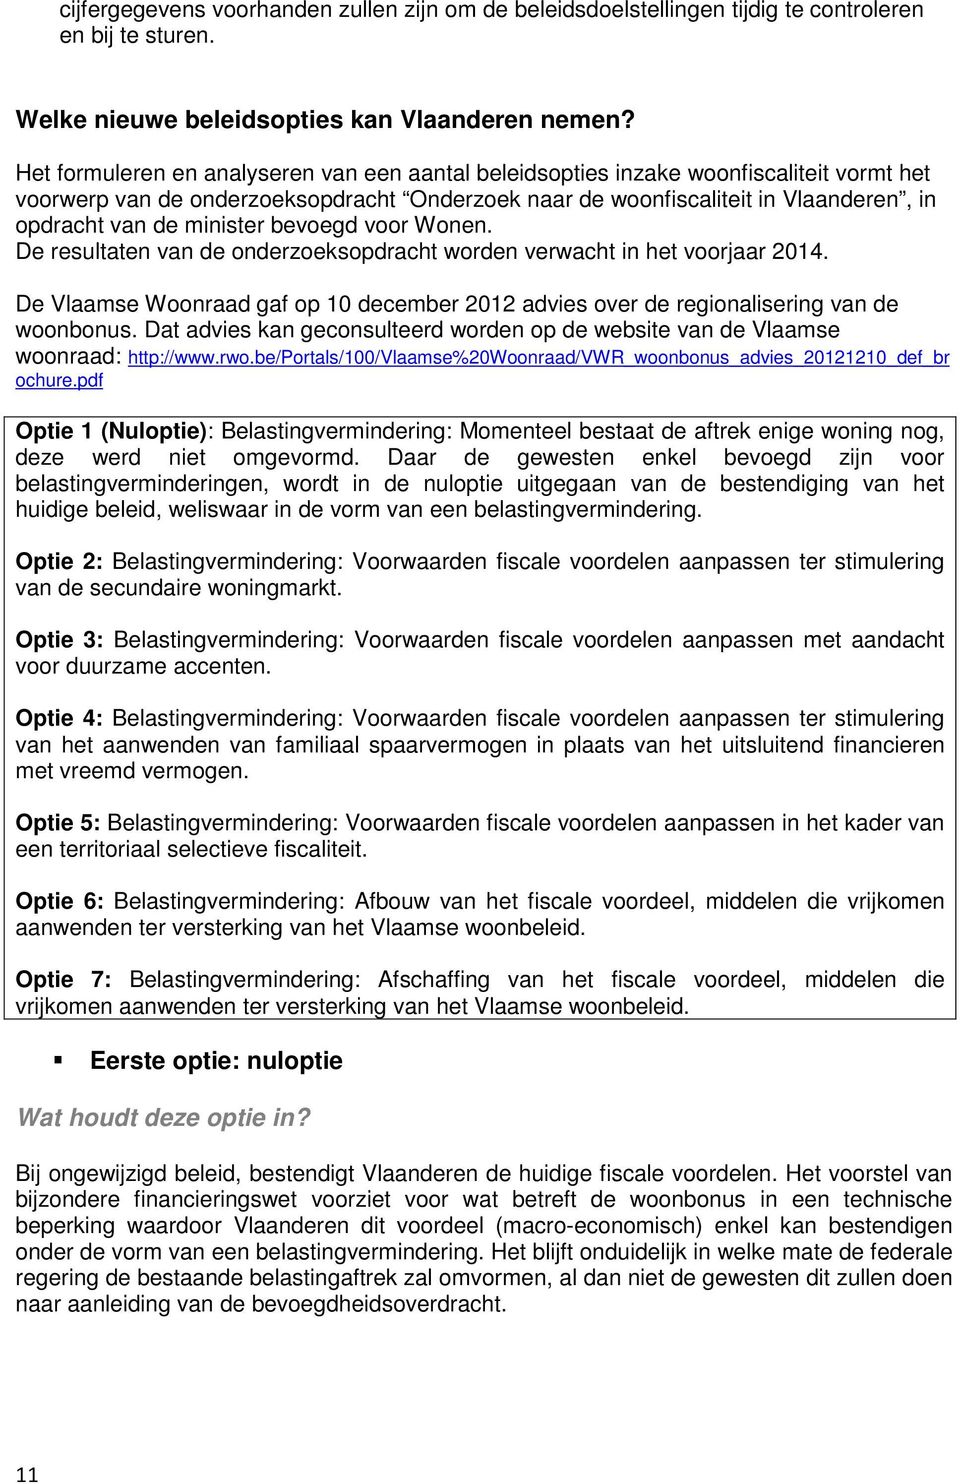 minister bevoegd voor Wonen. De resultaten van de onderzoeksopdracht worden verwacht in het voorjaar 2014. De Vlaamse Woonraad gaf op 10 december 2012 advies over de regionalisering van de woonbonus.